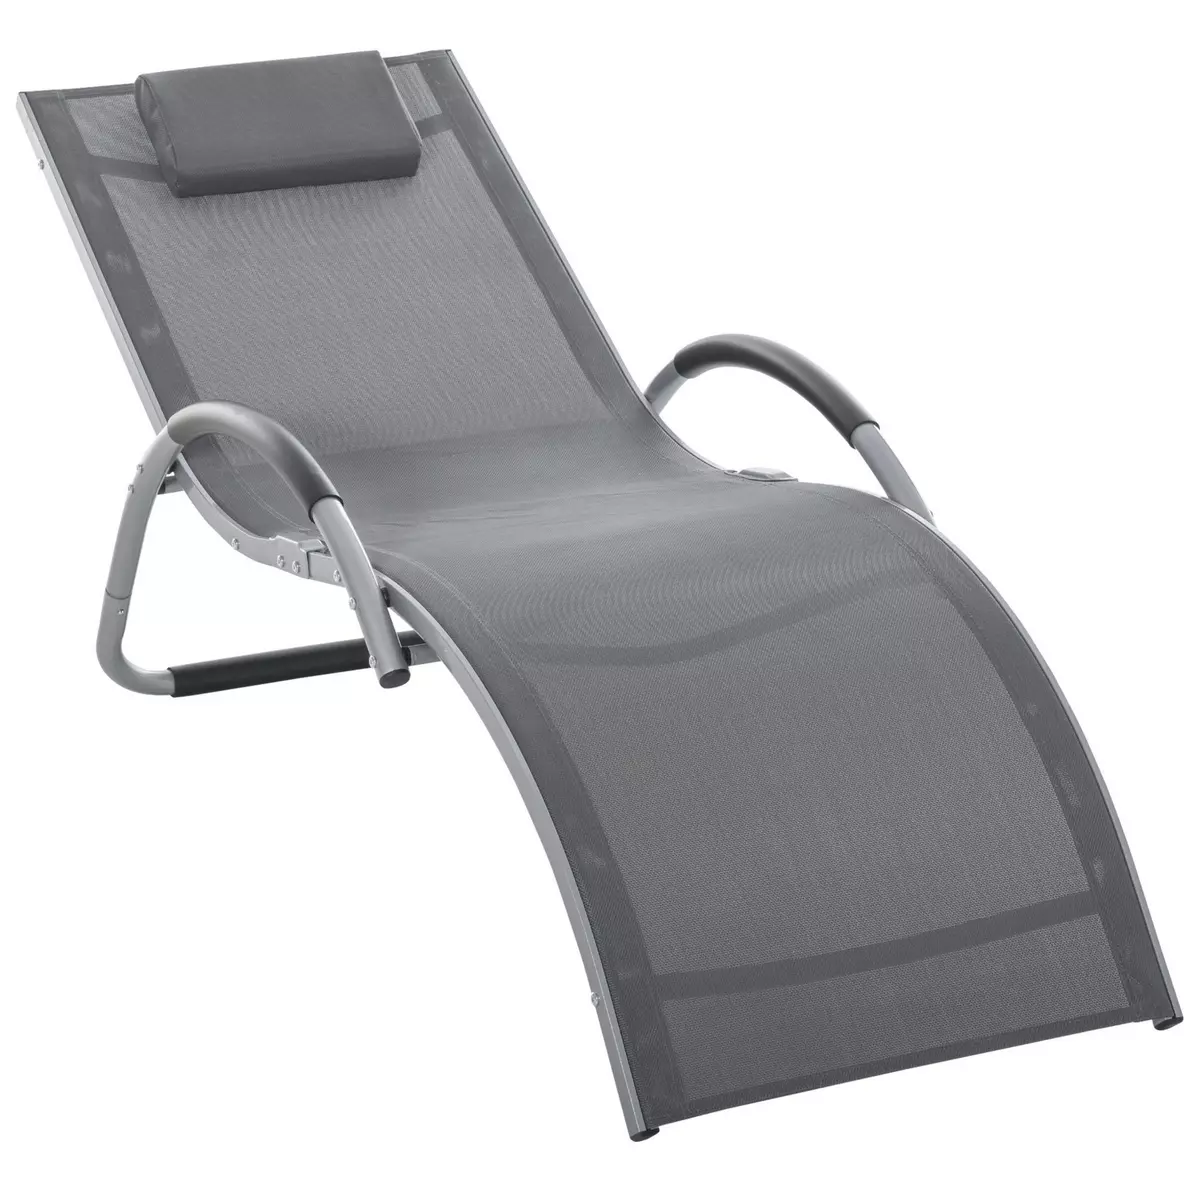 OUTSUNNY Bain de soleil transat design contemporain avec appui-tête grand confort léger aluminium textilène 160 x 60 x 65 cm gris